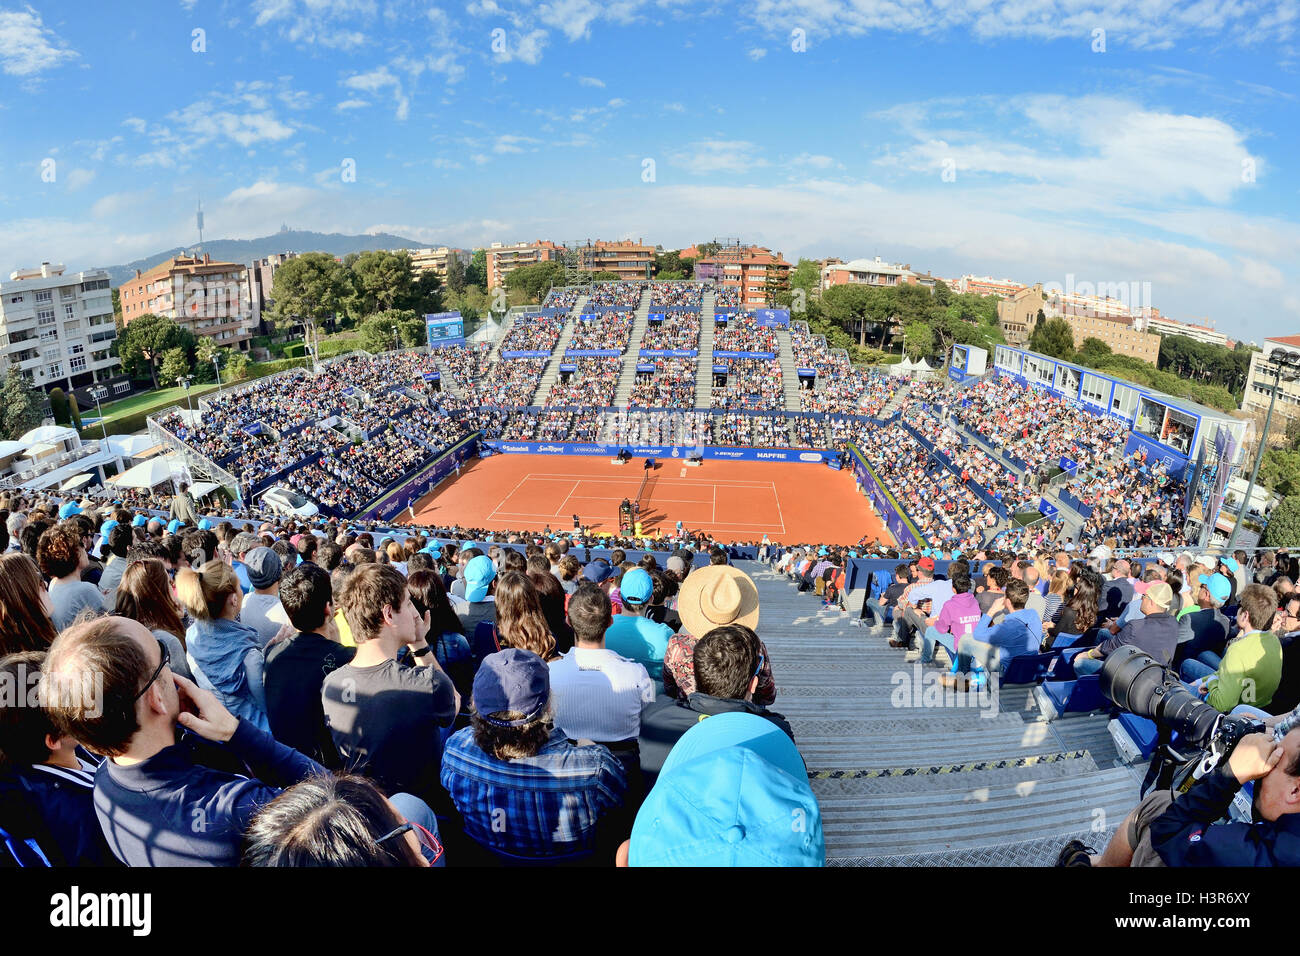 Barcelone - APR 26 : les spectateurs à l'ATP Open de Barcelone Banc Sabadell Conde de Godo tournoi. Banque D'Images